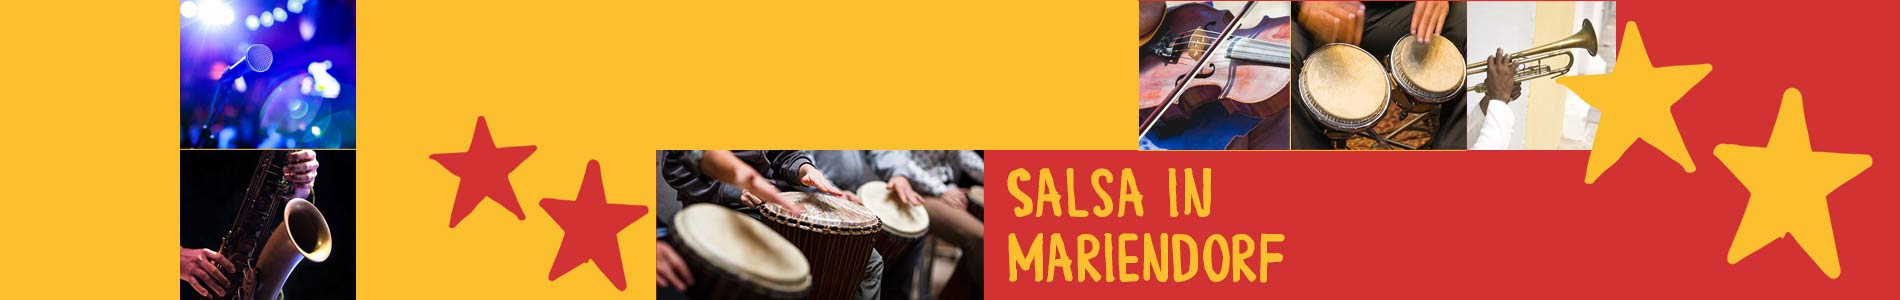 Salsa in Mariendorf – Salsa lernen und tanzen, Tanzkurse, Partys, Veranstaltungen